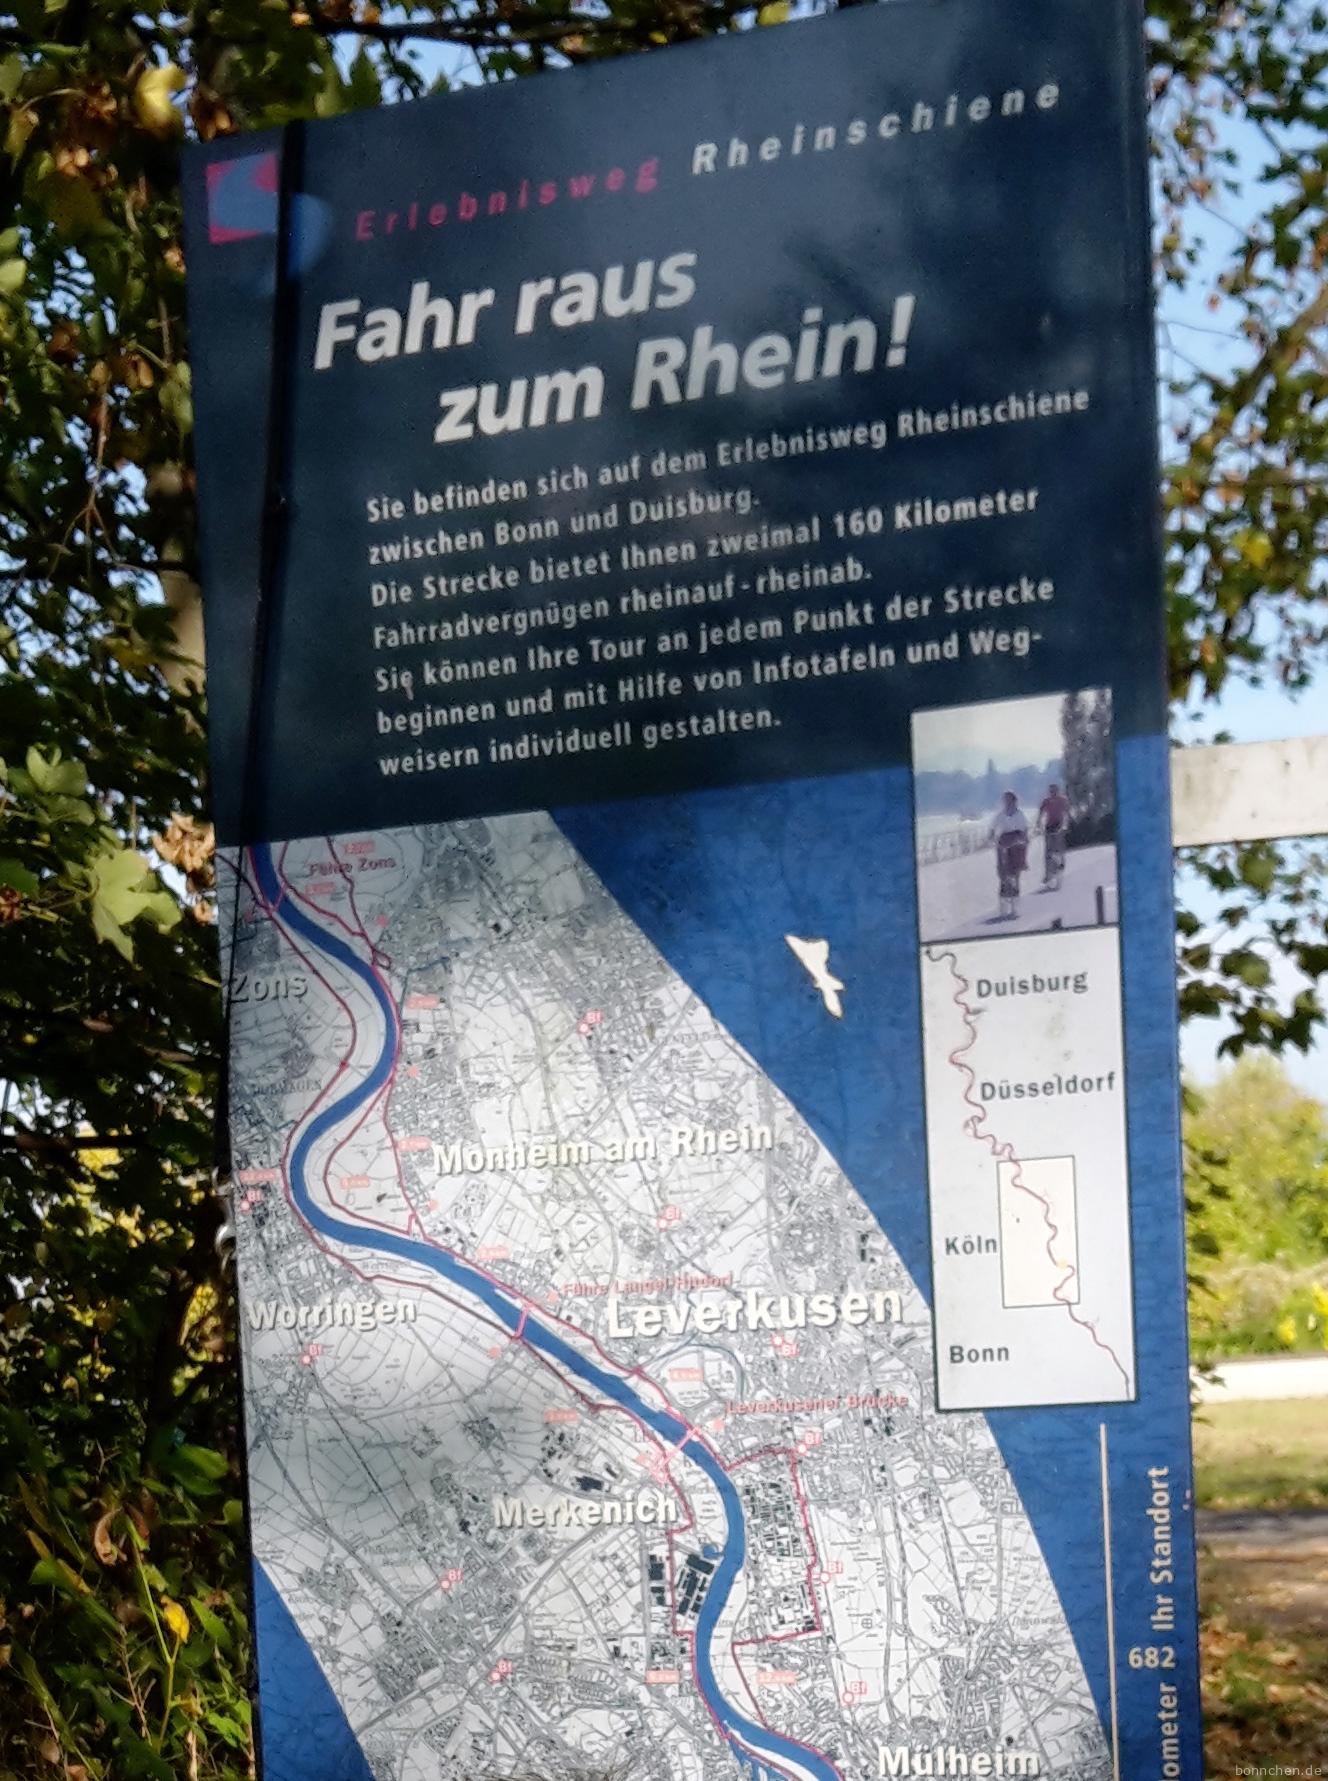 Tafel vom Erlebnisweg Rheinschiene